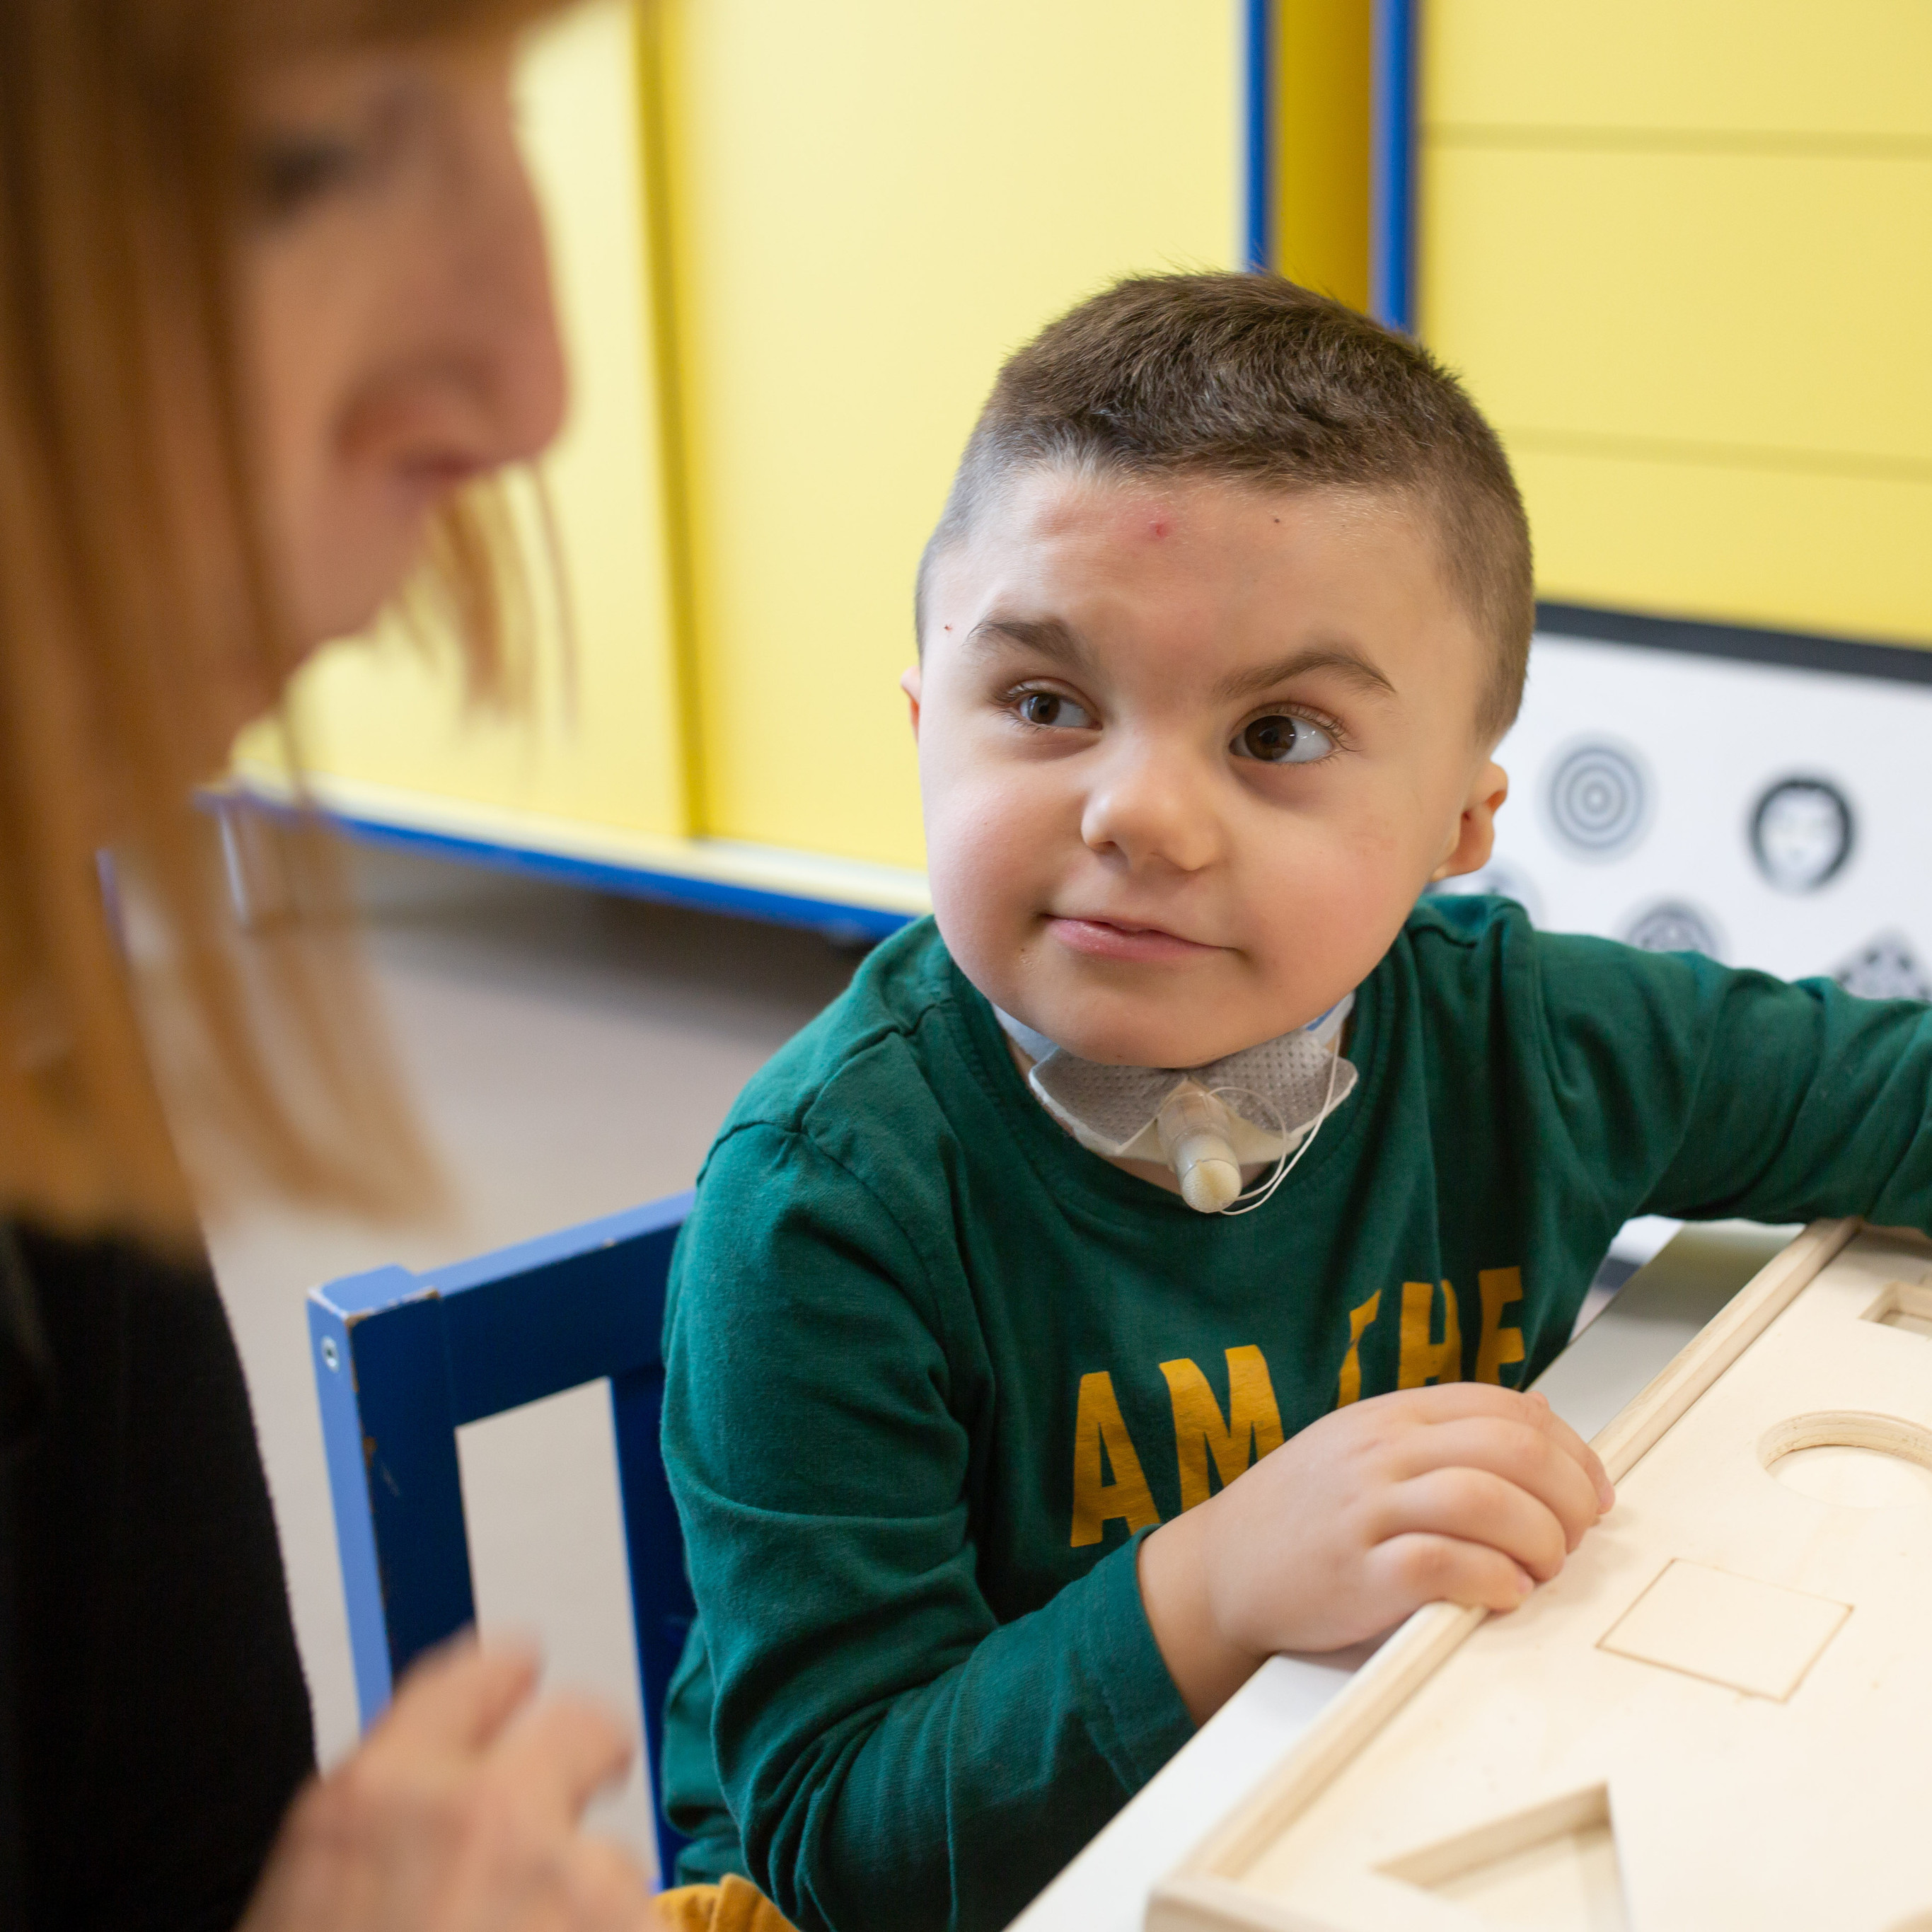 Il piccolo Leonardo, bambino con sindrome di Charge a trattamento nel Centro Nazionale, guarda su verso l'educatrice mentre fa un'attività con telle sagome in legno